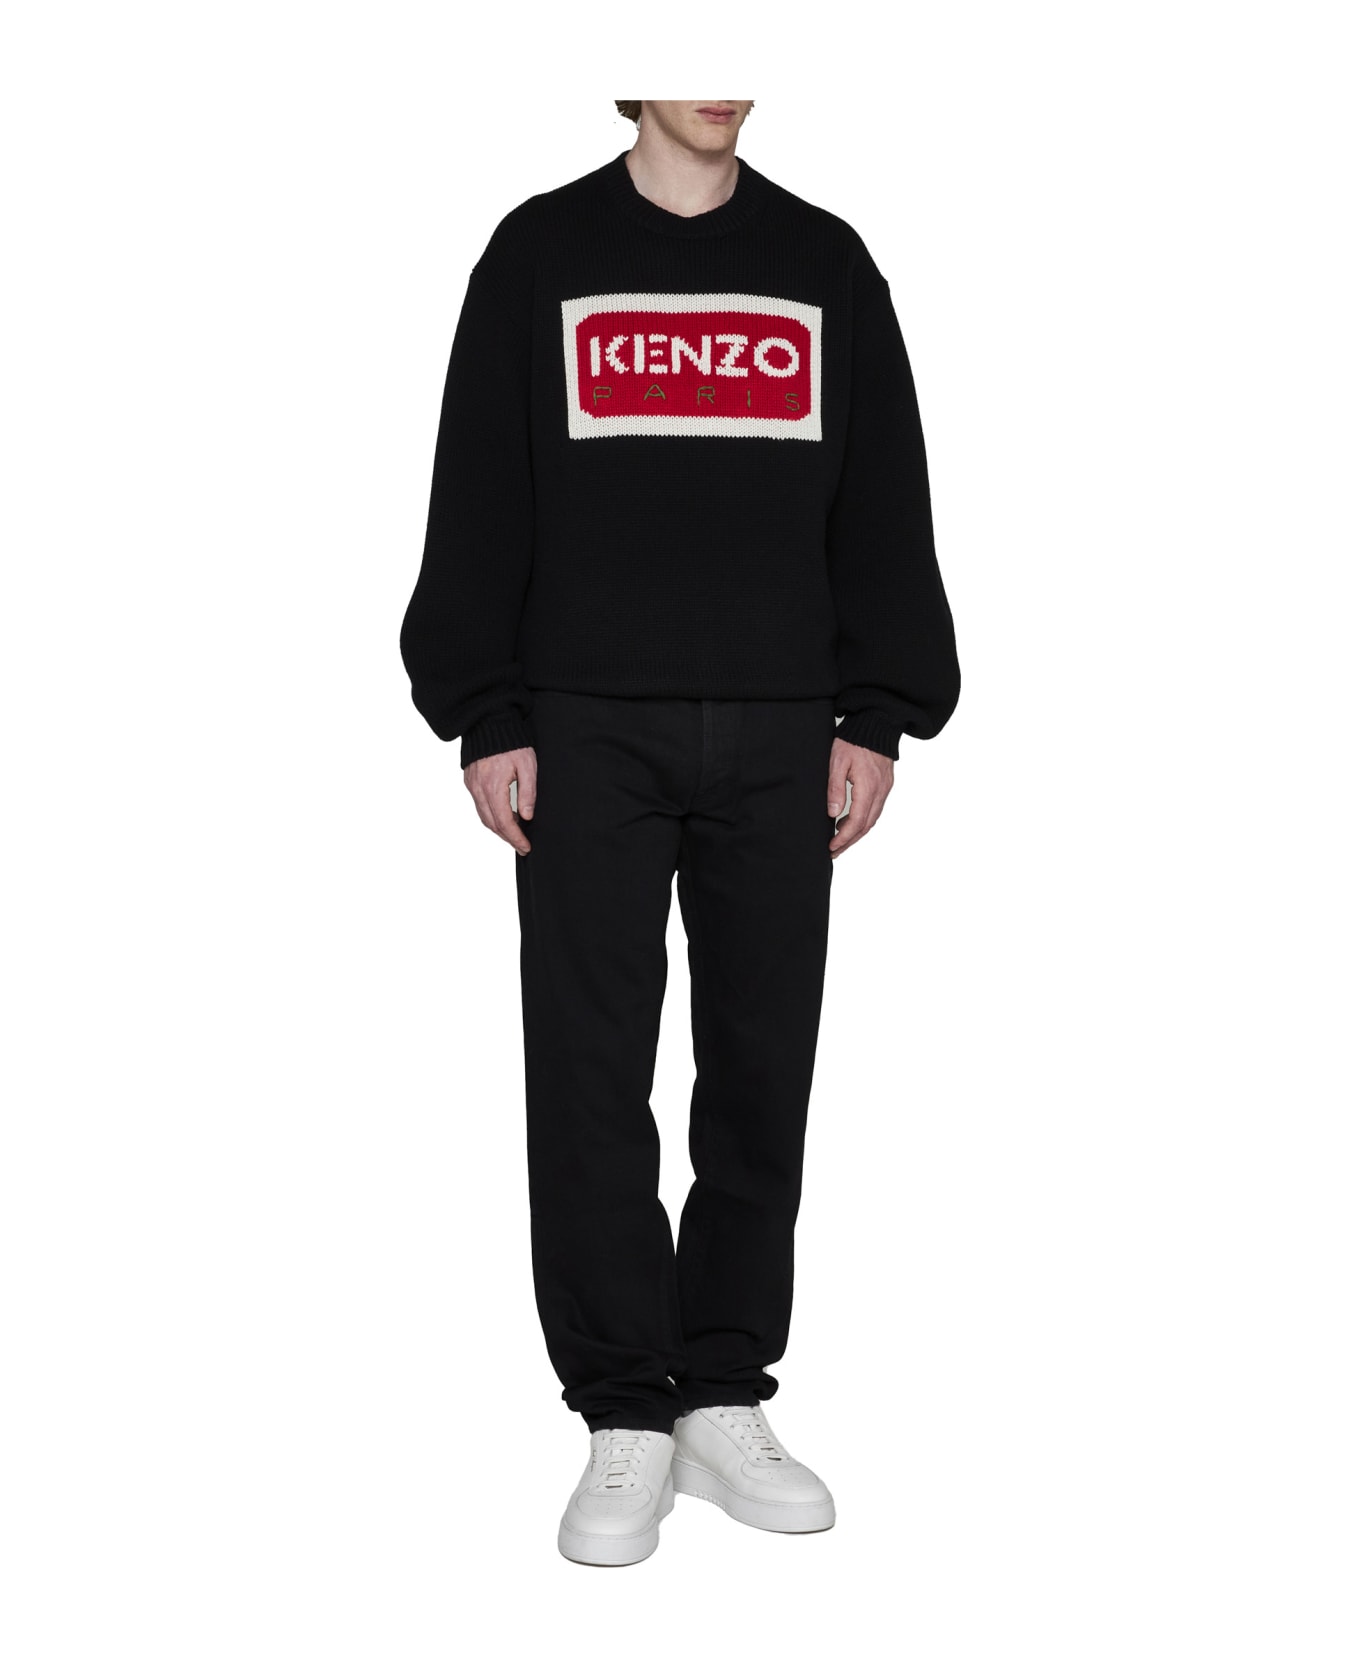 Kenzo Crew-neck Sweater - J Black